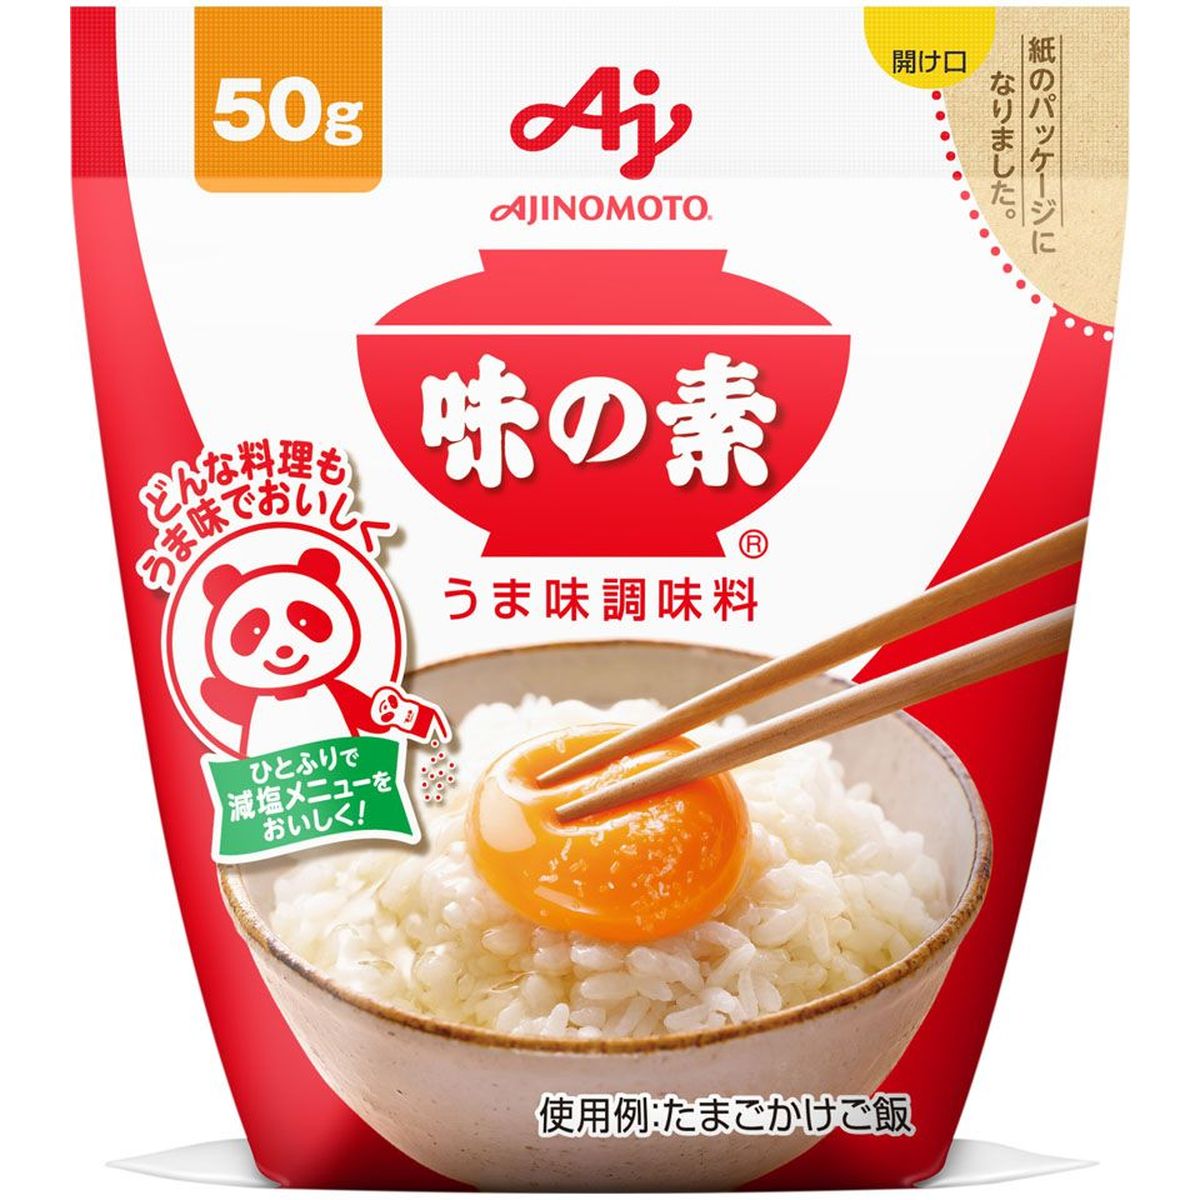 【送料無料】味の素AGF うまみ調味料 袋 50g x 20